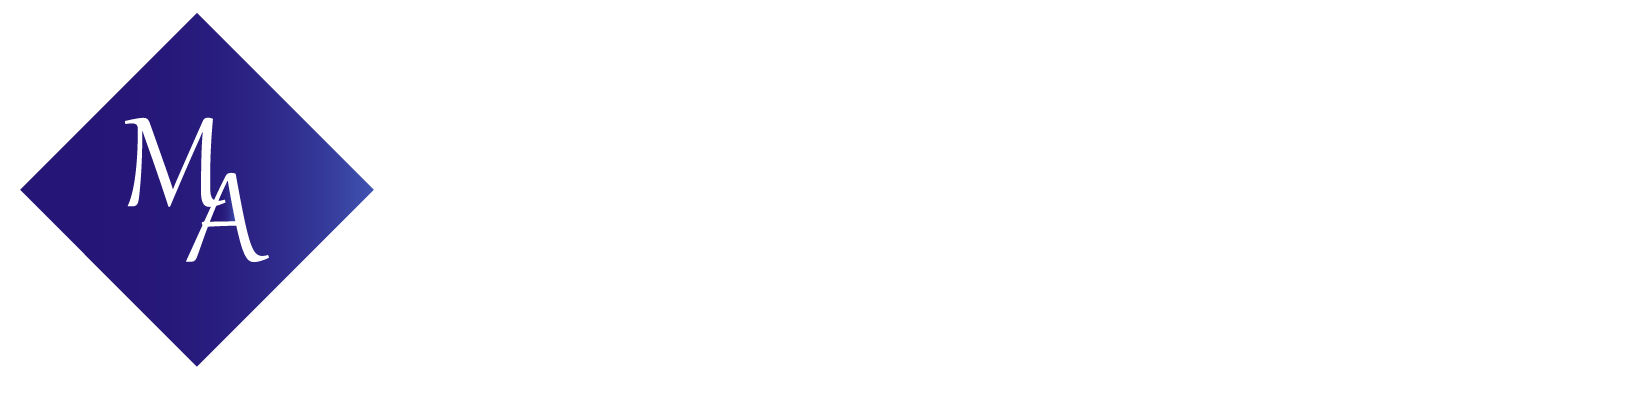 Mahnaz Afkhami